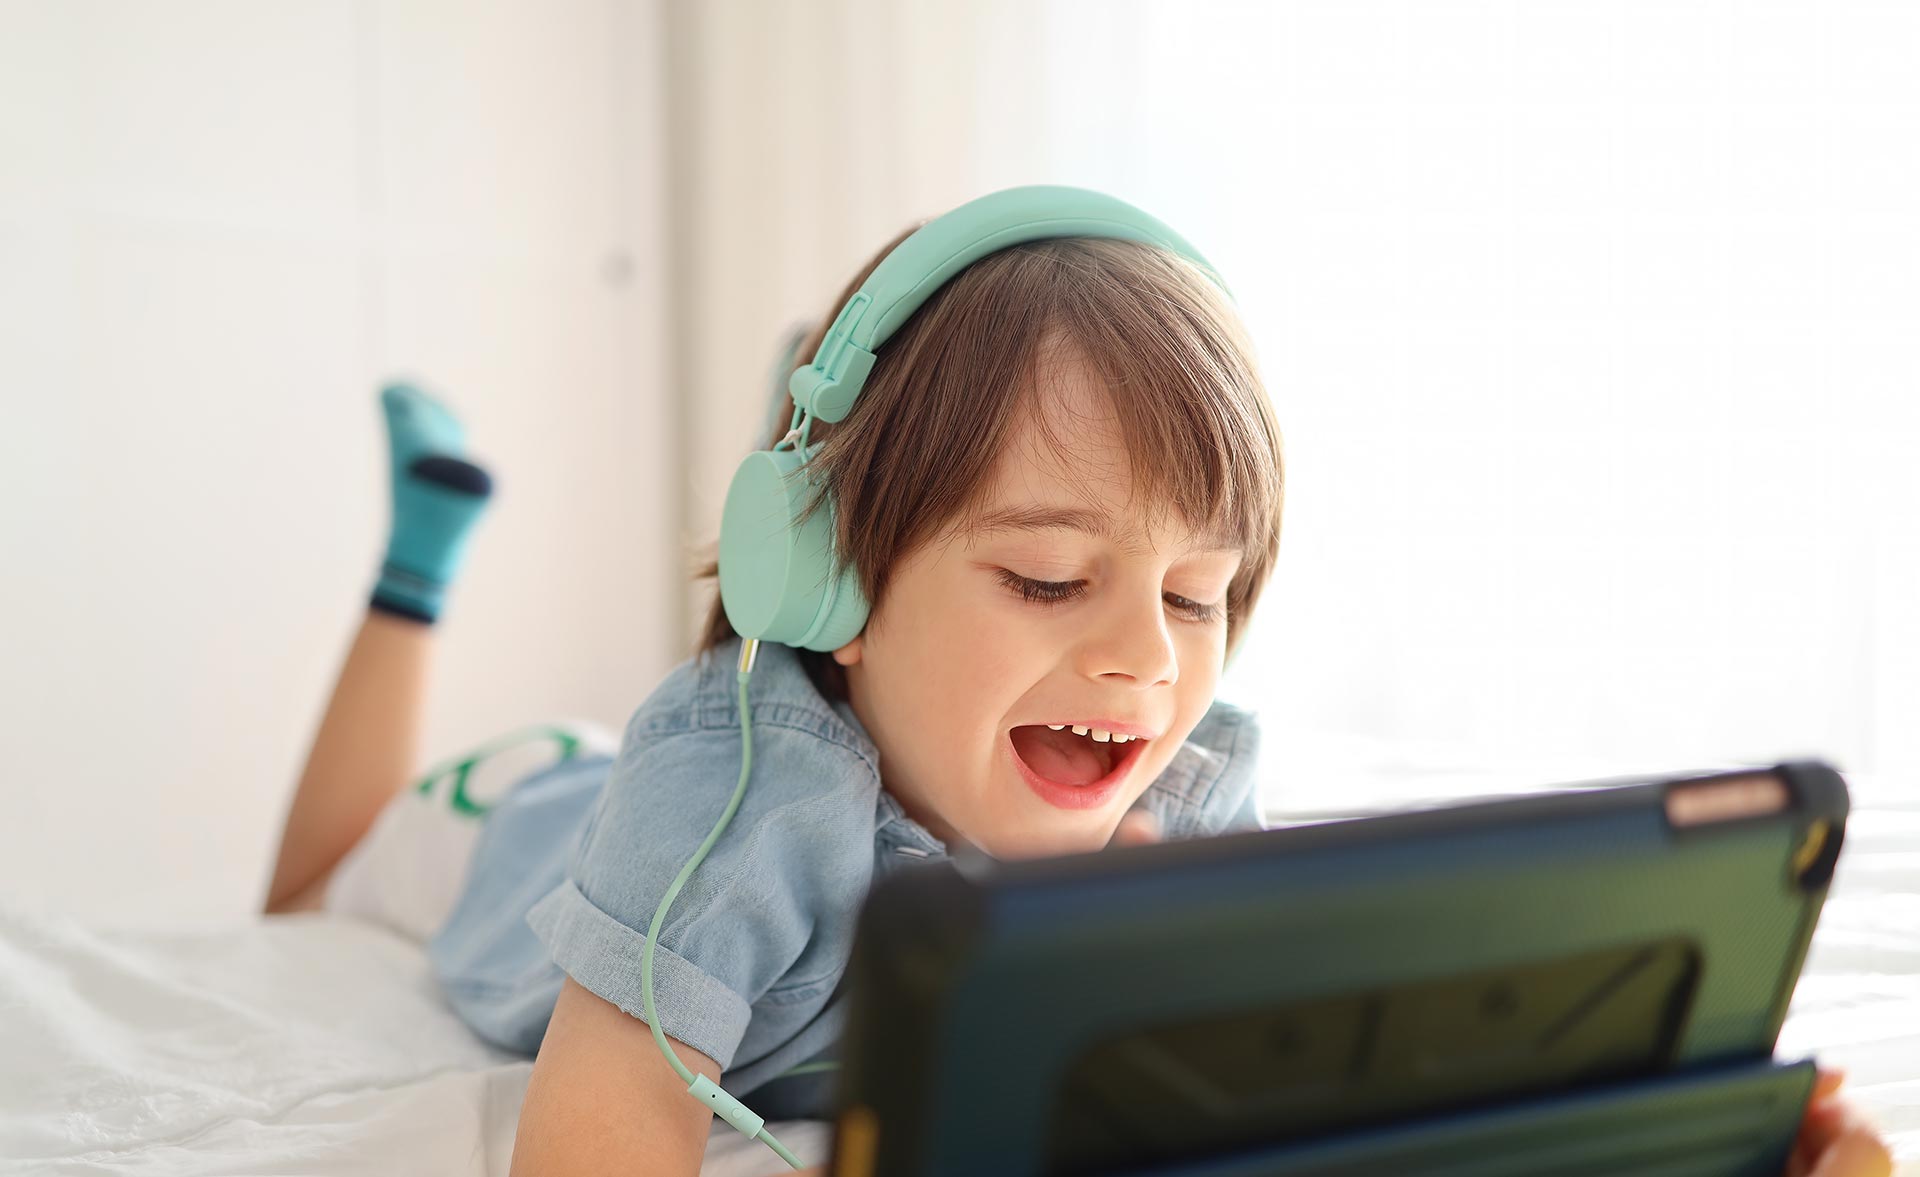 Les écrans rendent-ils vraiment les enfants autistes? – L'Express